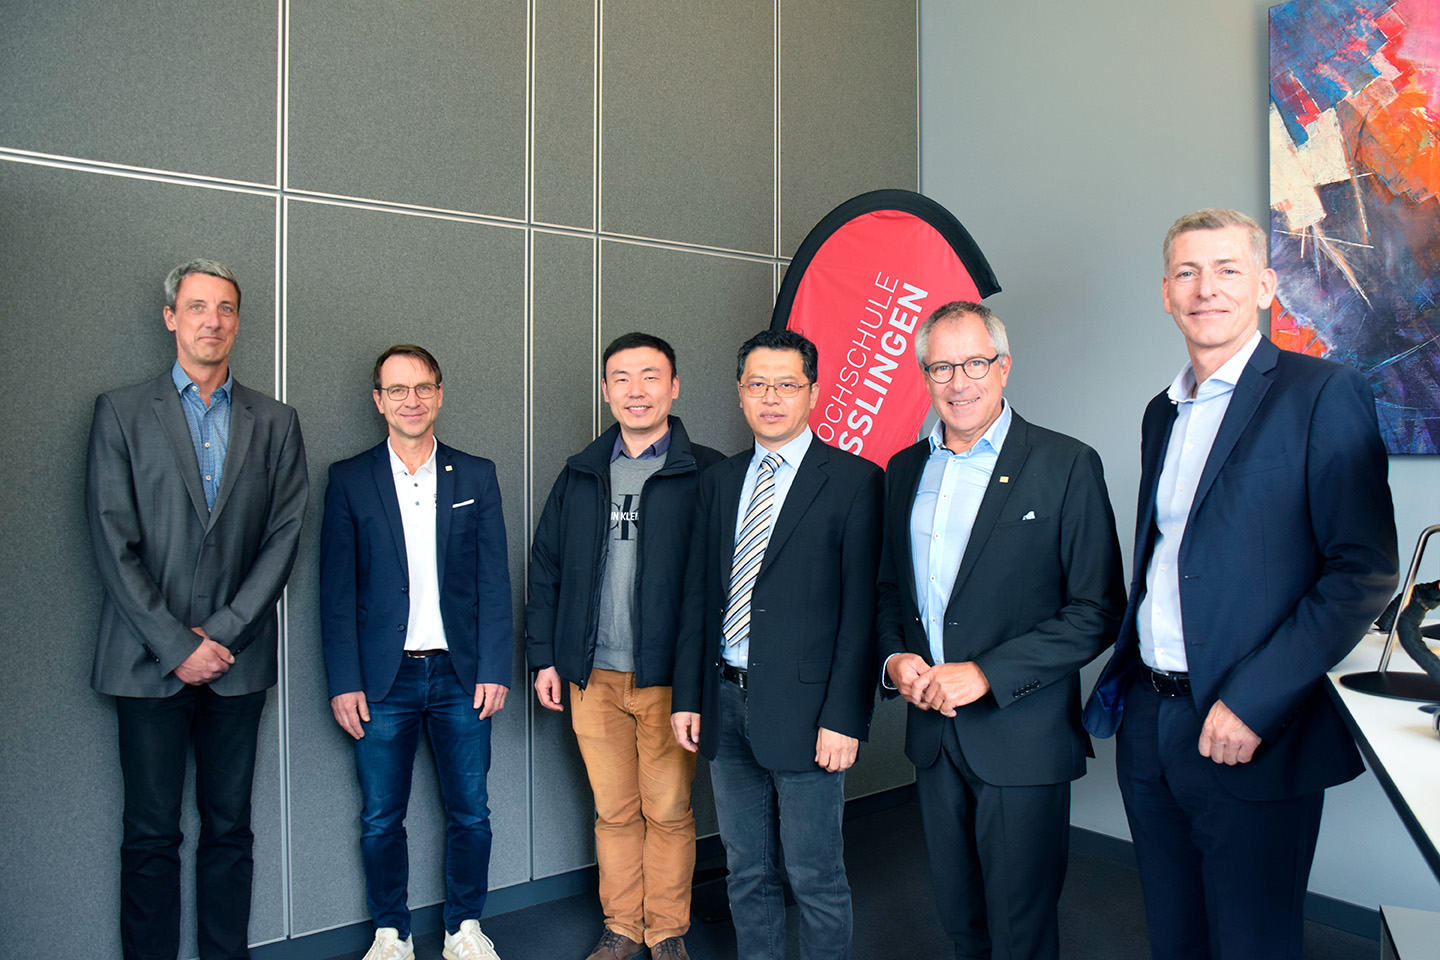 Chinesische Delegation und Gastgeber an der Hochschule Esslingen